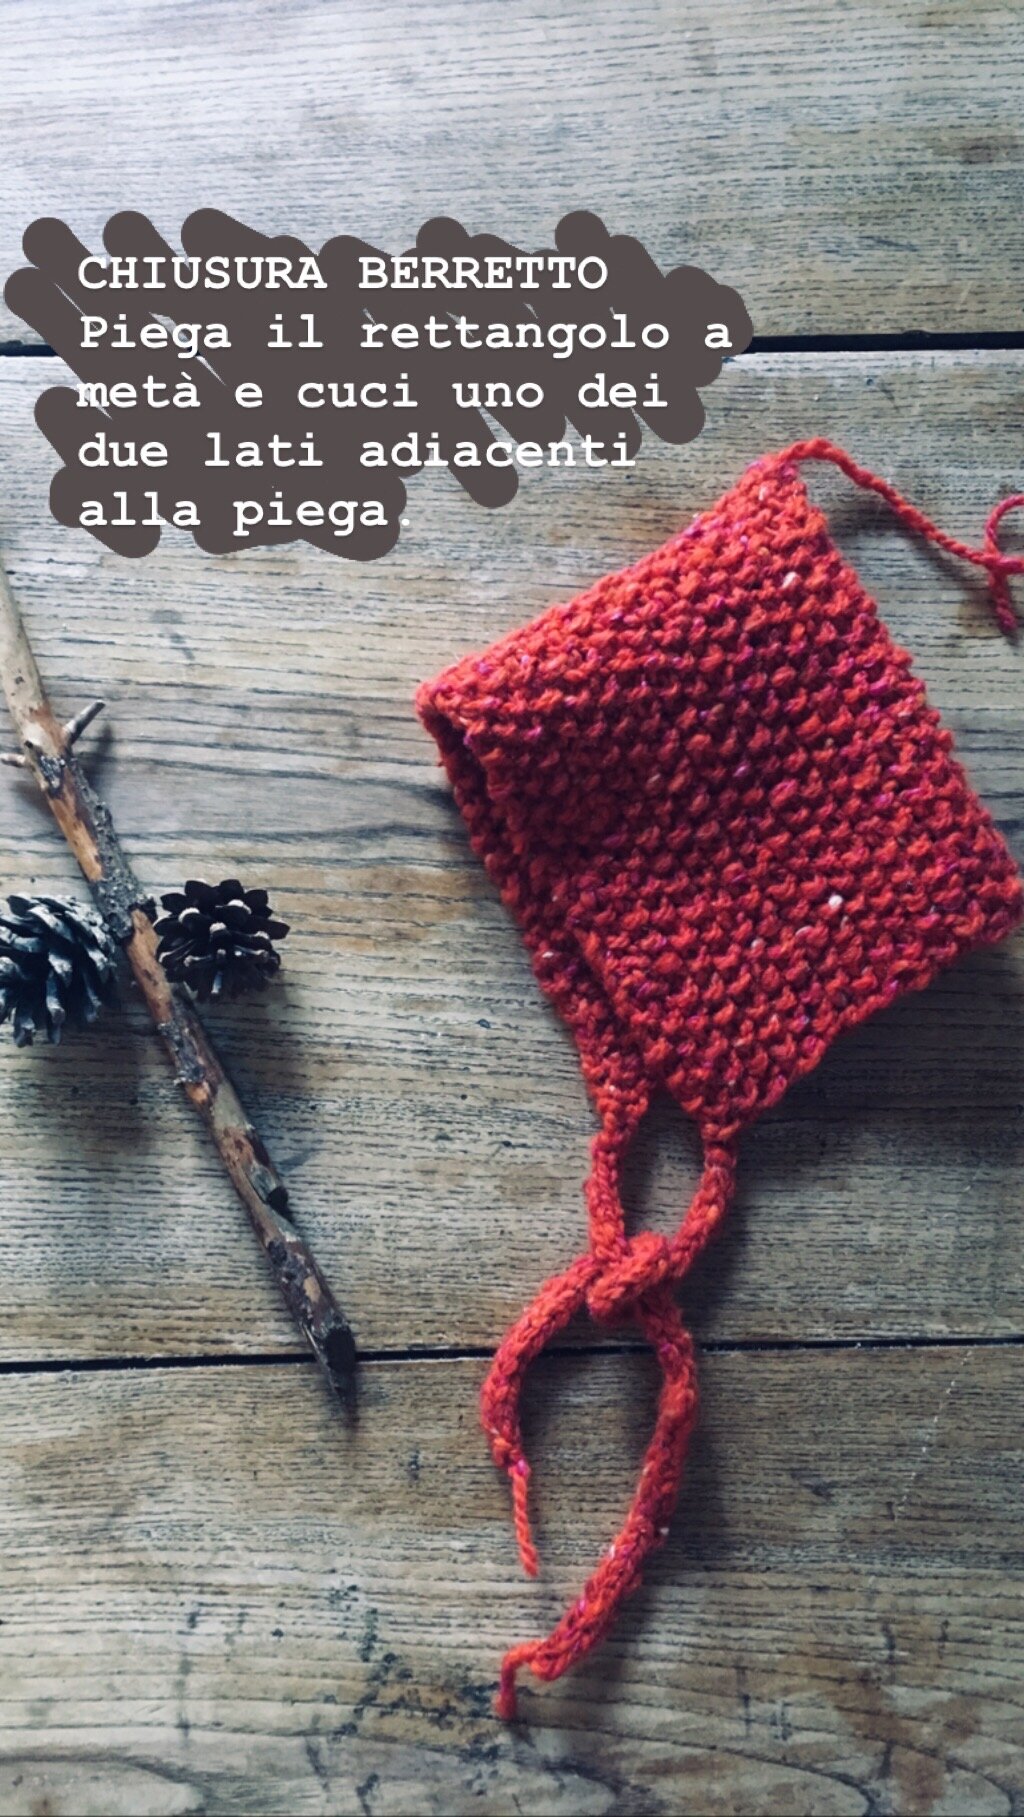 elfo_beanie_wool_done_knitting_4.JPG